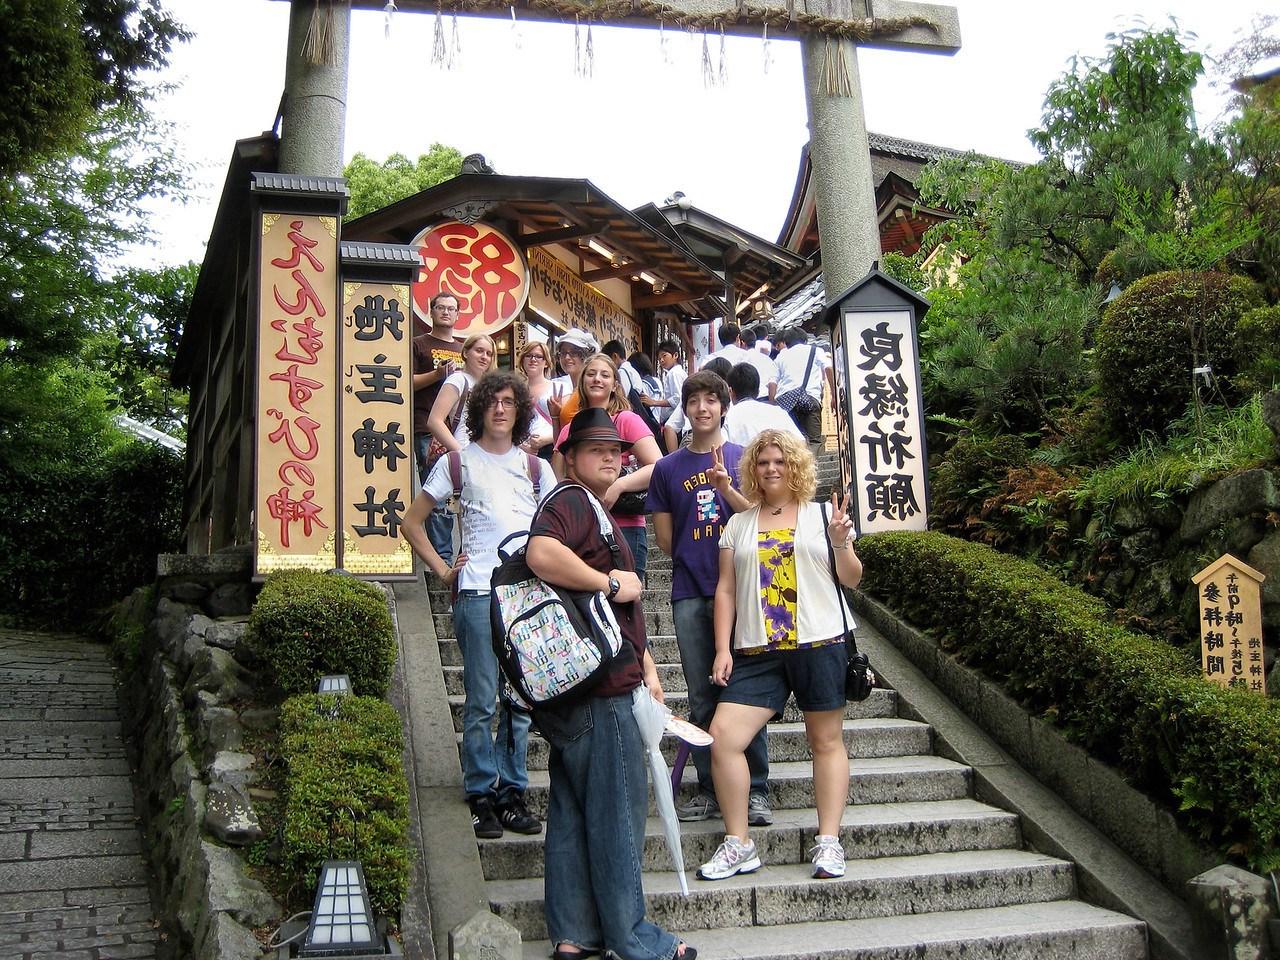 留学旅行是BGSU日语辅修课程不可分割的一部分. 学生们学习日语、文化和宗教.